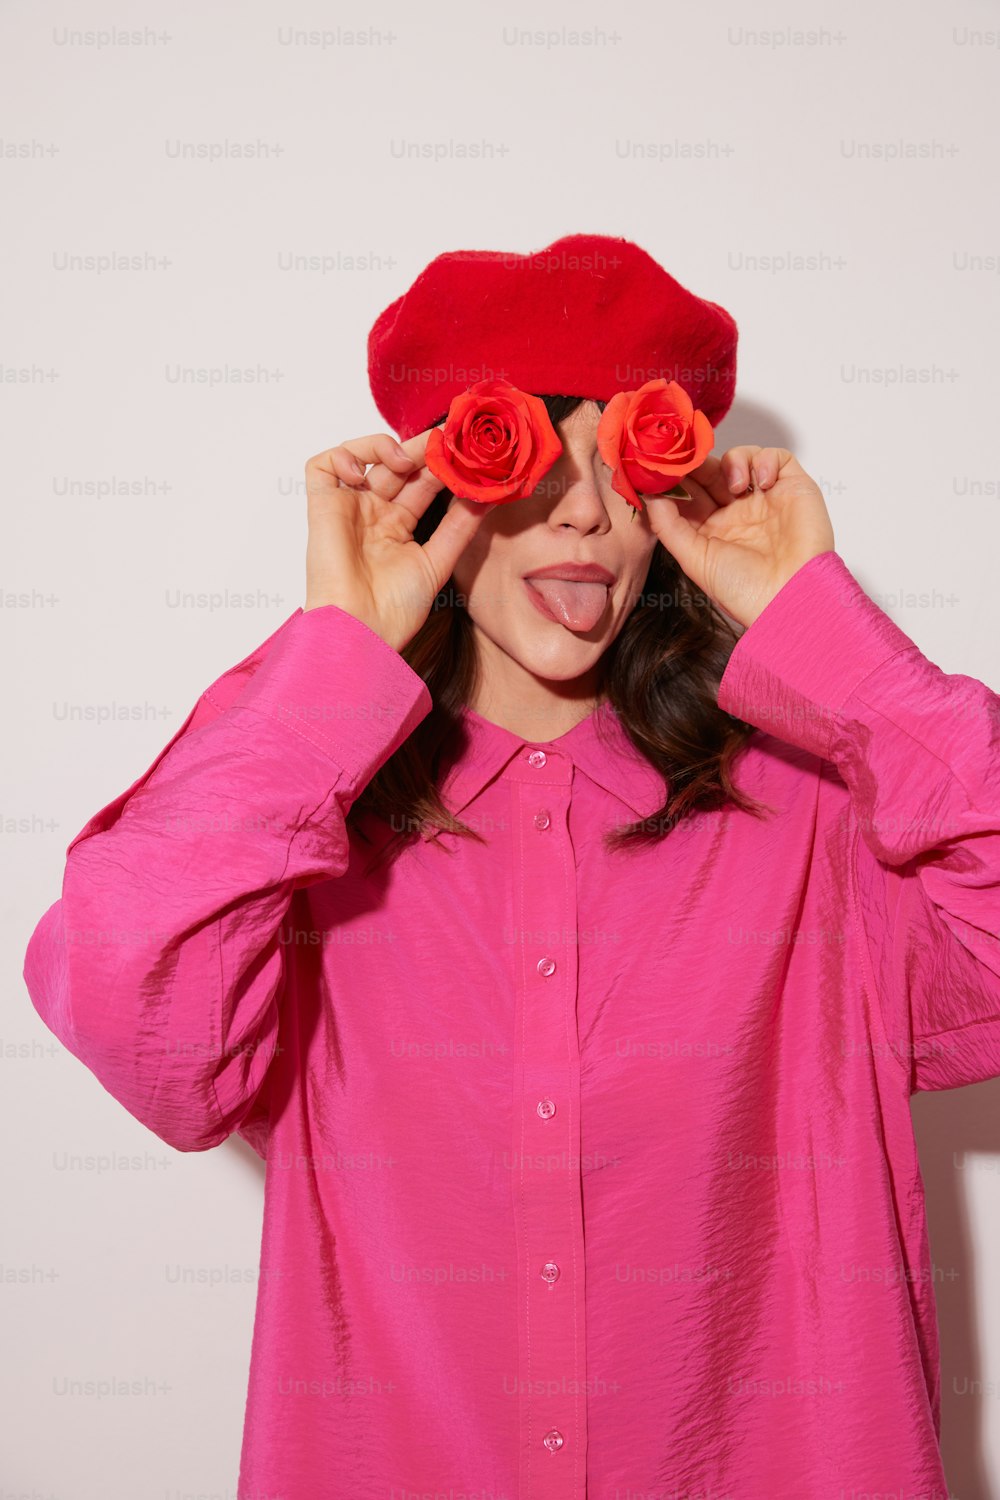 ピンクのシャツと赤いバラの帽子をかぶった女性